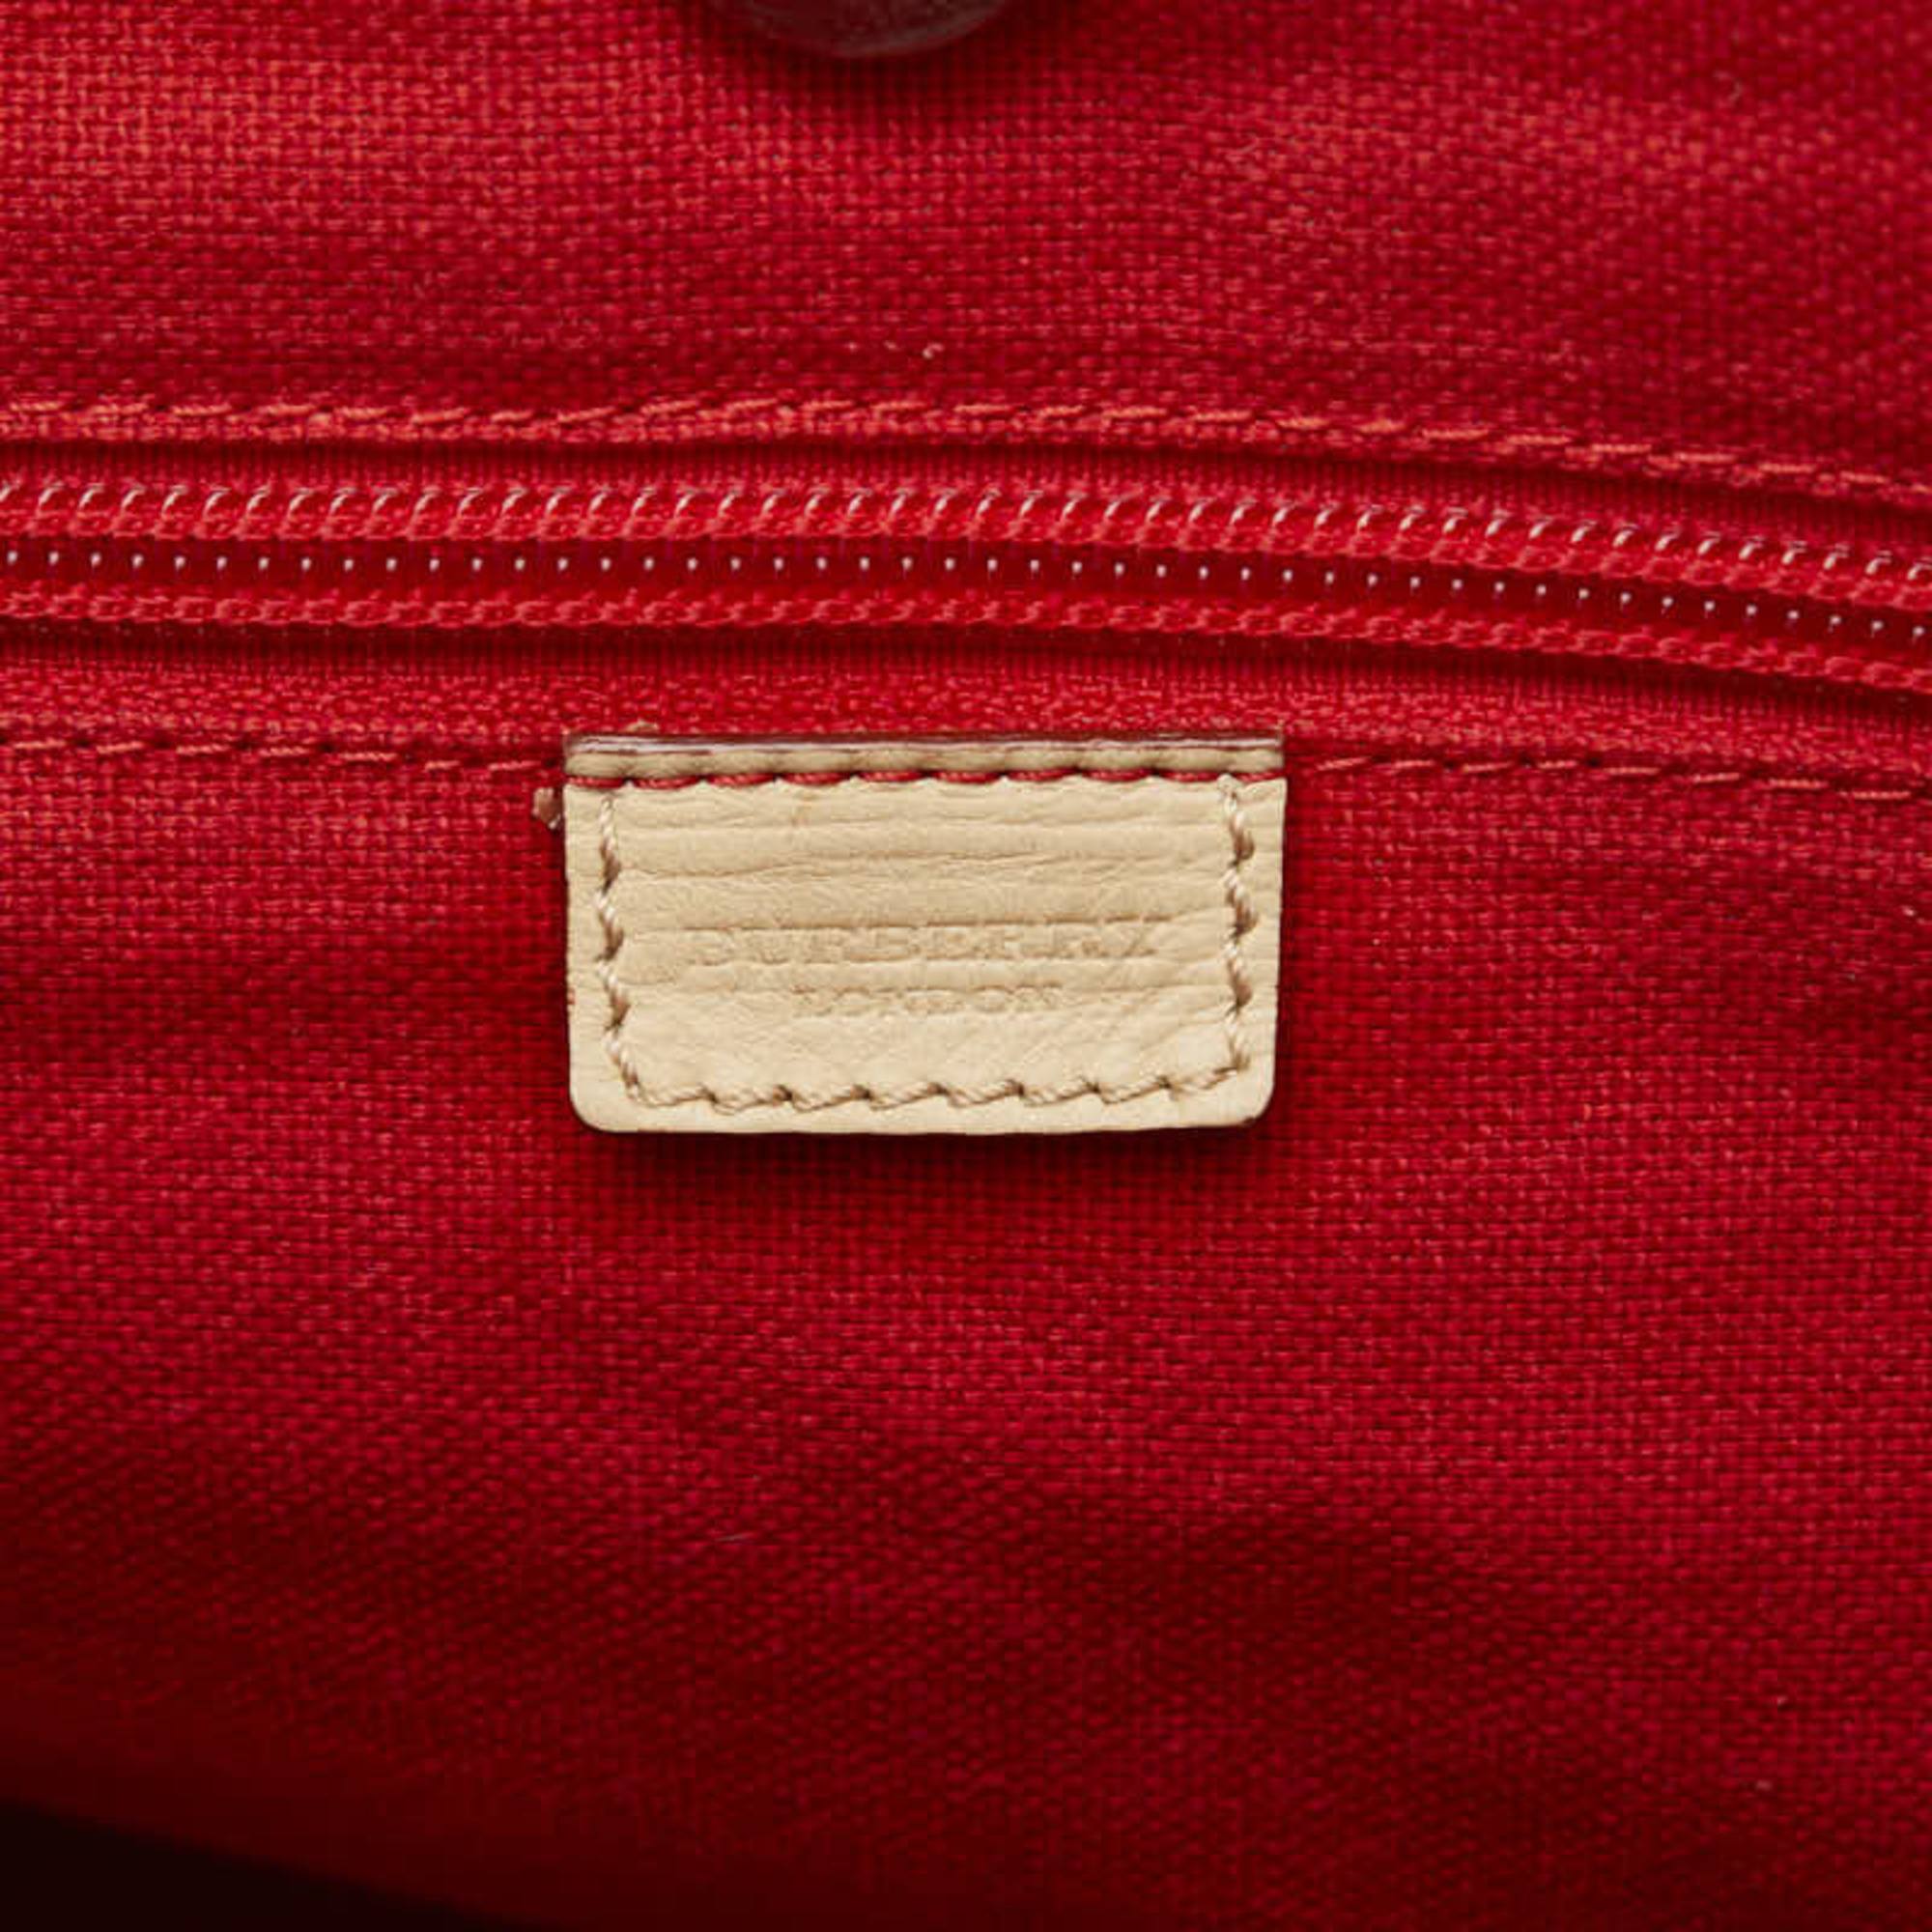 Burberry Nova Check Handbag Tote Bag Beige Red Canvas Women's BURBERRY